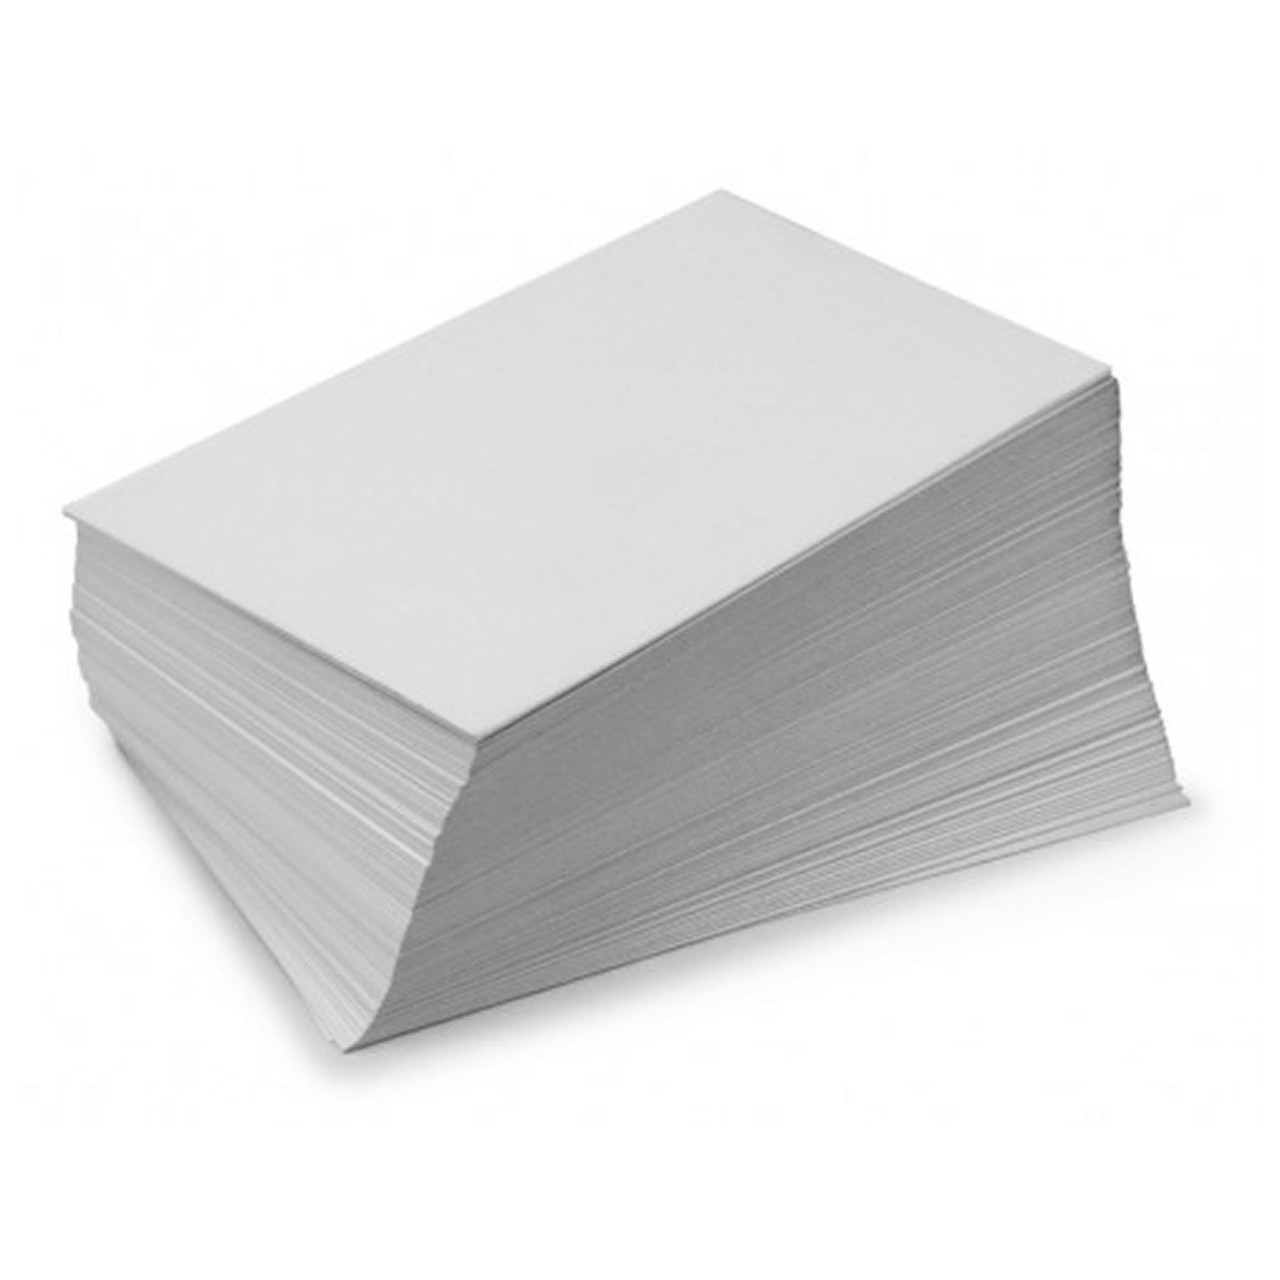 White A4 Premium Card - 300gsm